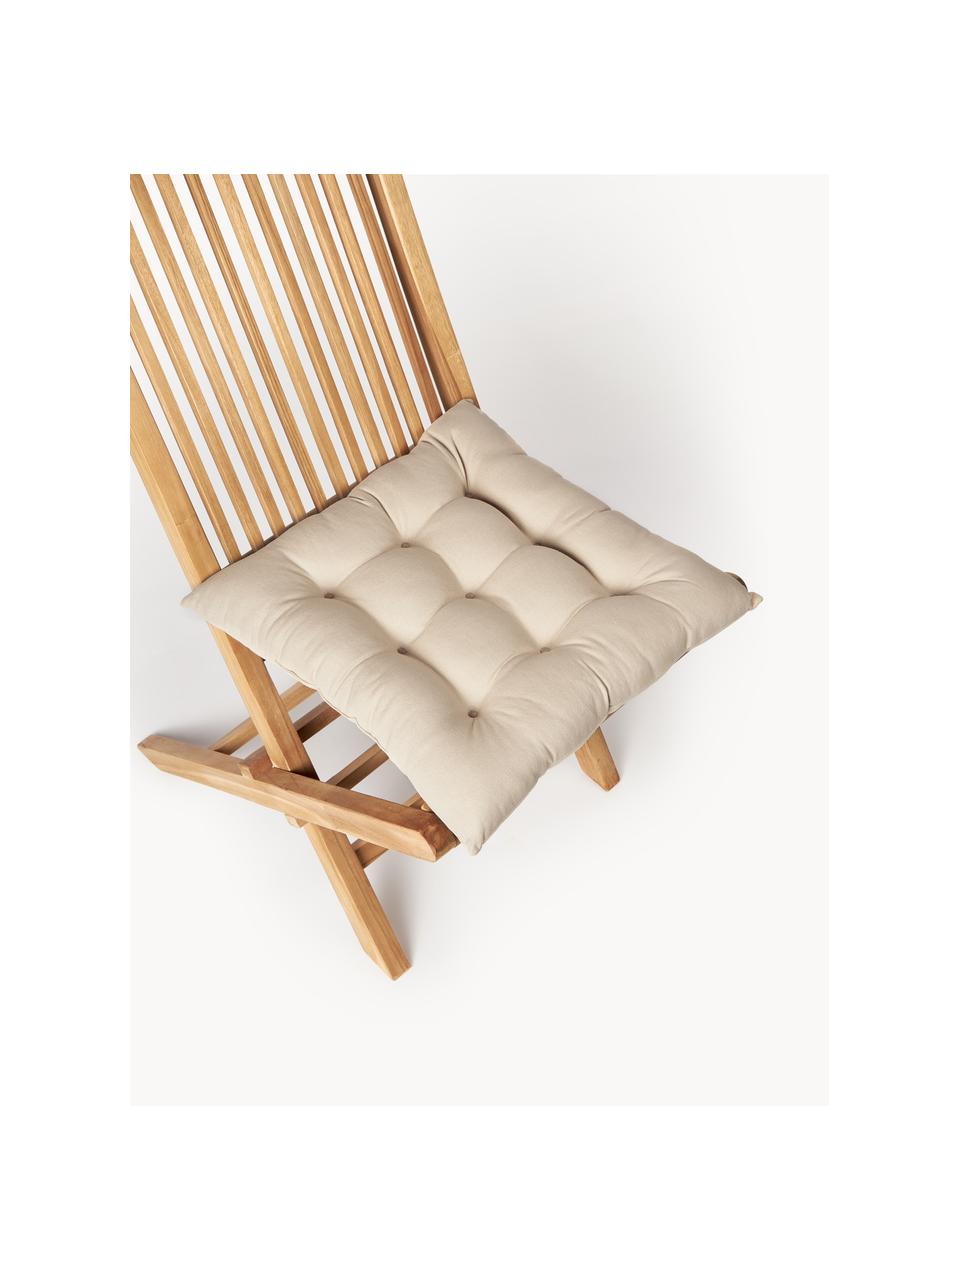 Poduszka na krzesło Ava, 2 szt., Tapicerka: 100% bawełna, Greige, S 40 x D 40 cm